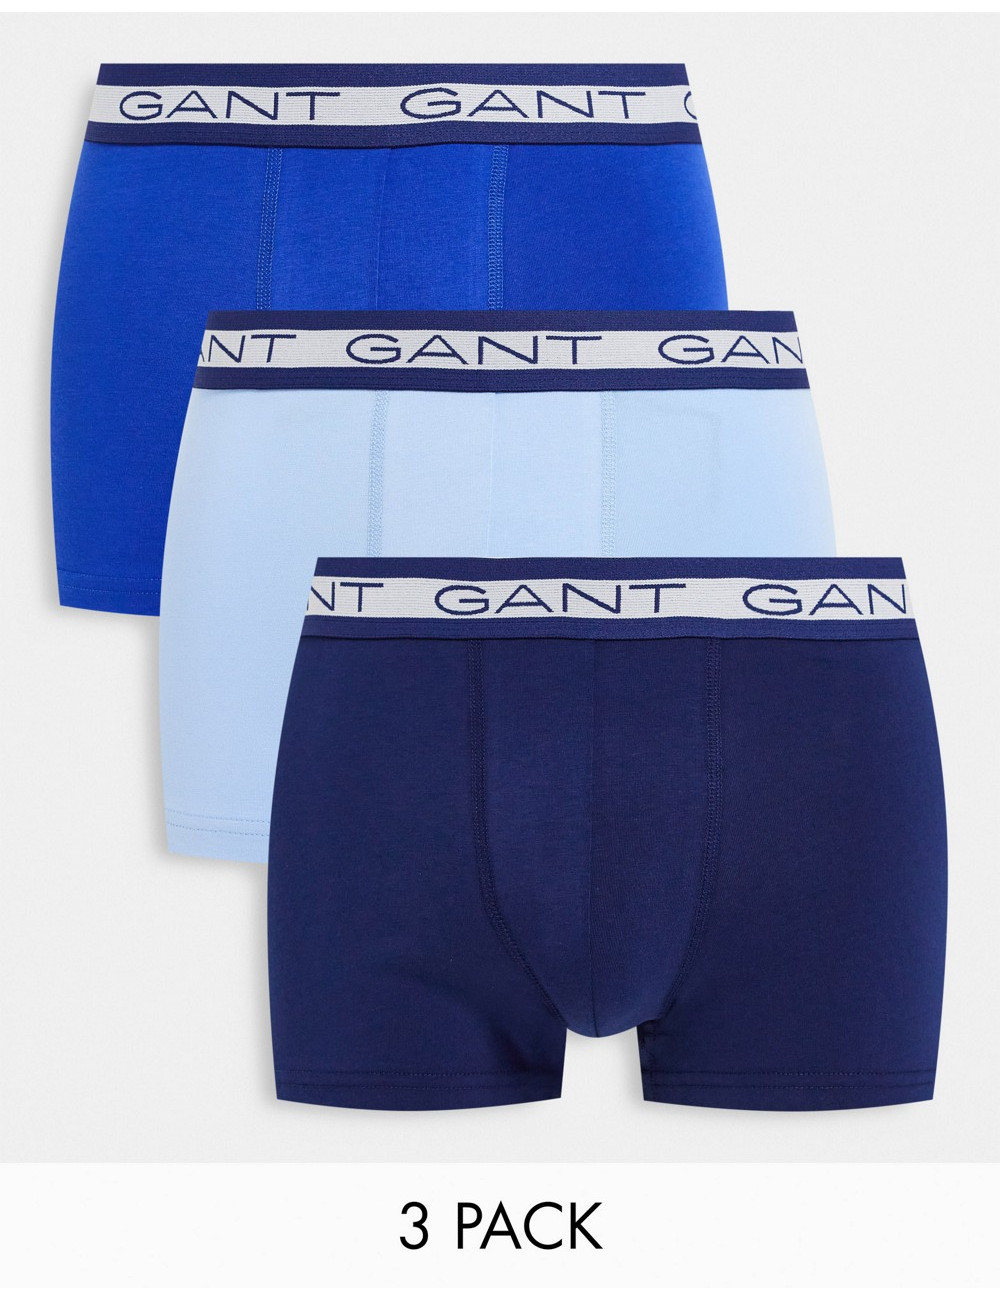 GANT 3 pack trunks in blue...